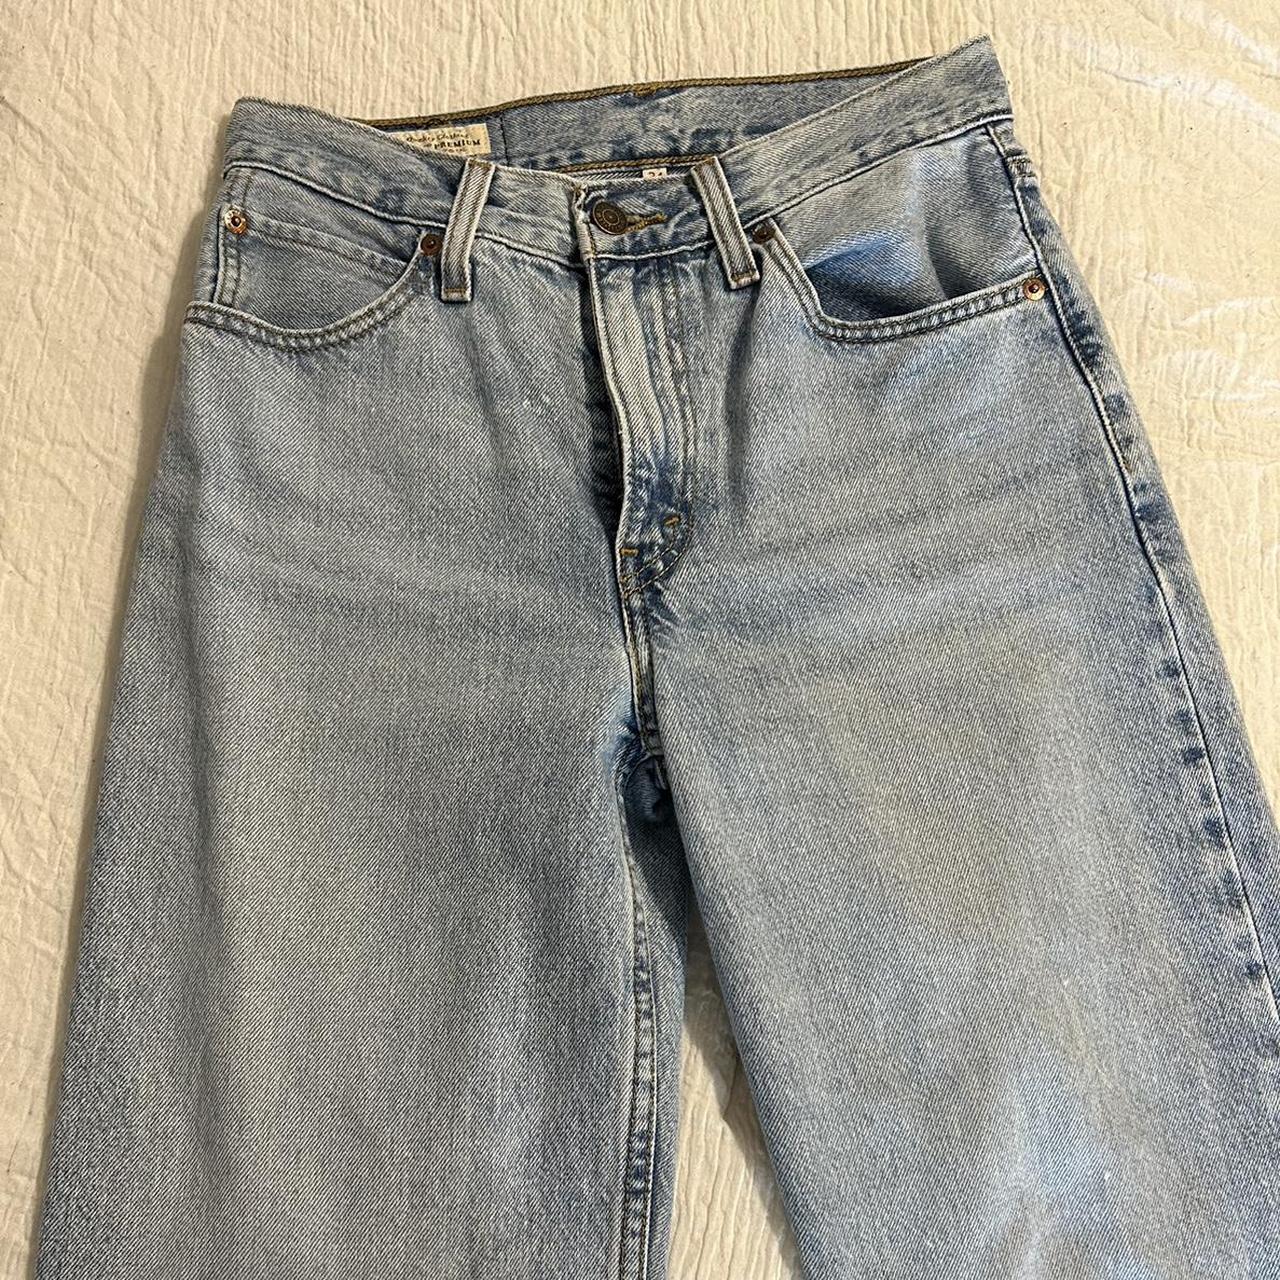 size 24 light wash levi’s baggy dad jeans 💙 I... - Depop